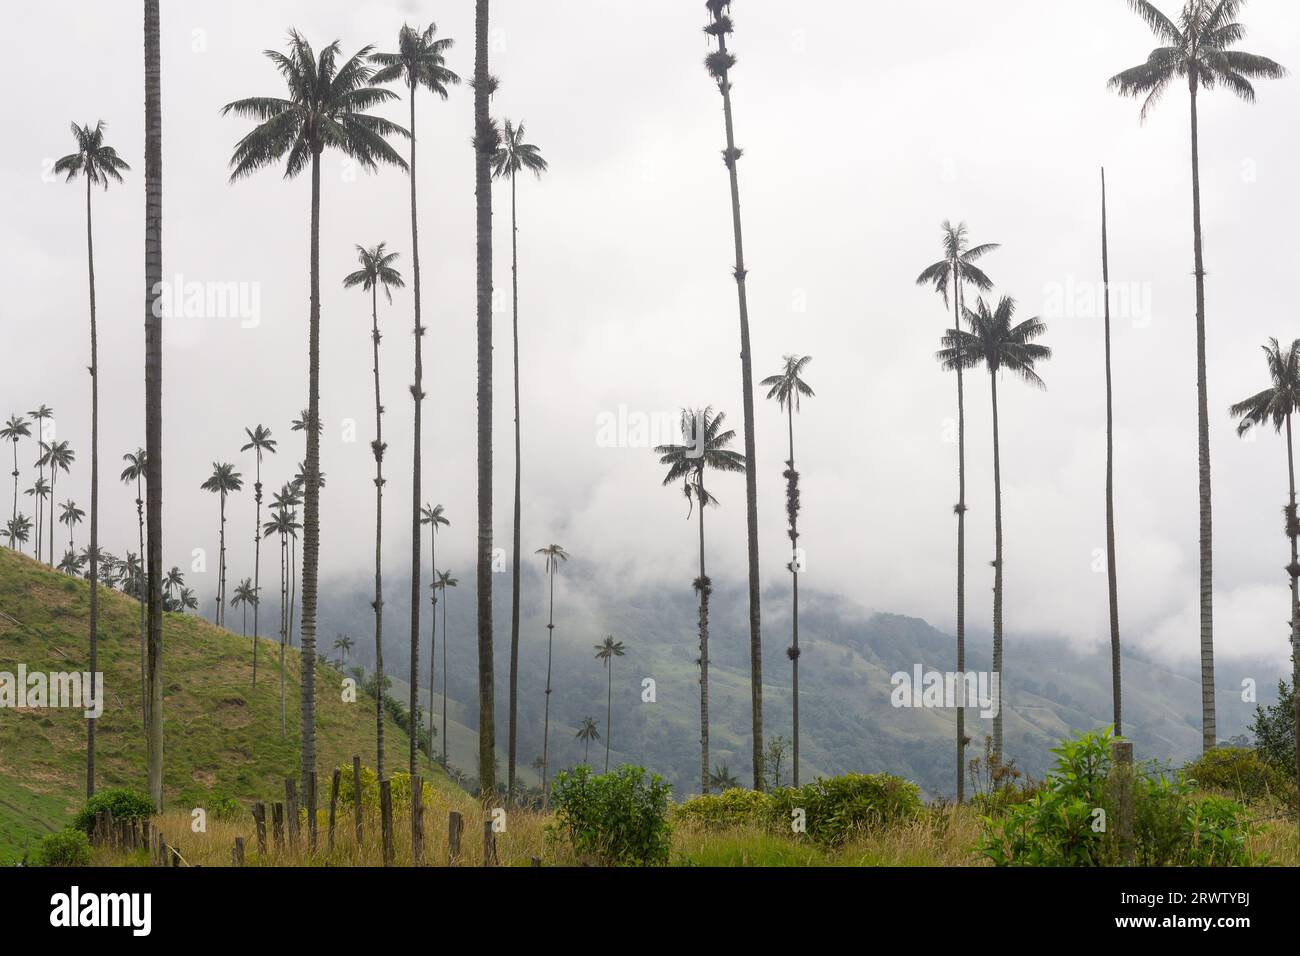 Cocora Valley nel Parco Nazionale di Los Nevados, Colombia - la palma di cera è l'albero nazionale colombiano e la specie a rischio di estinzione. Foto Stock